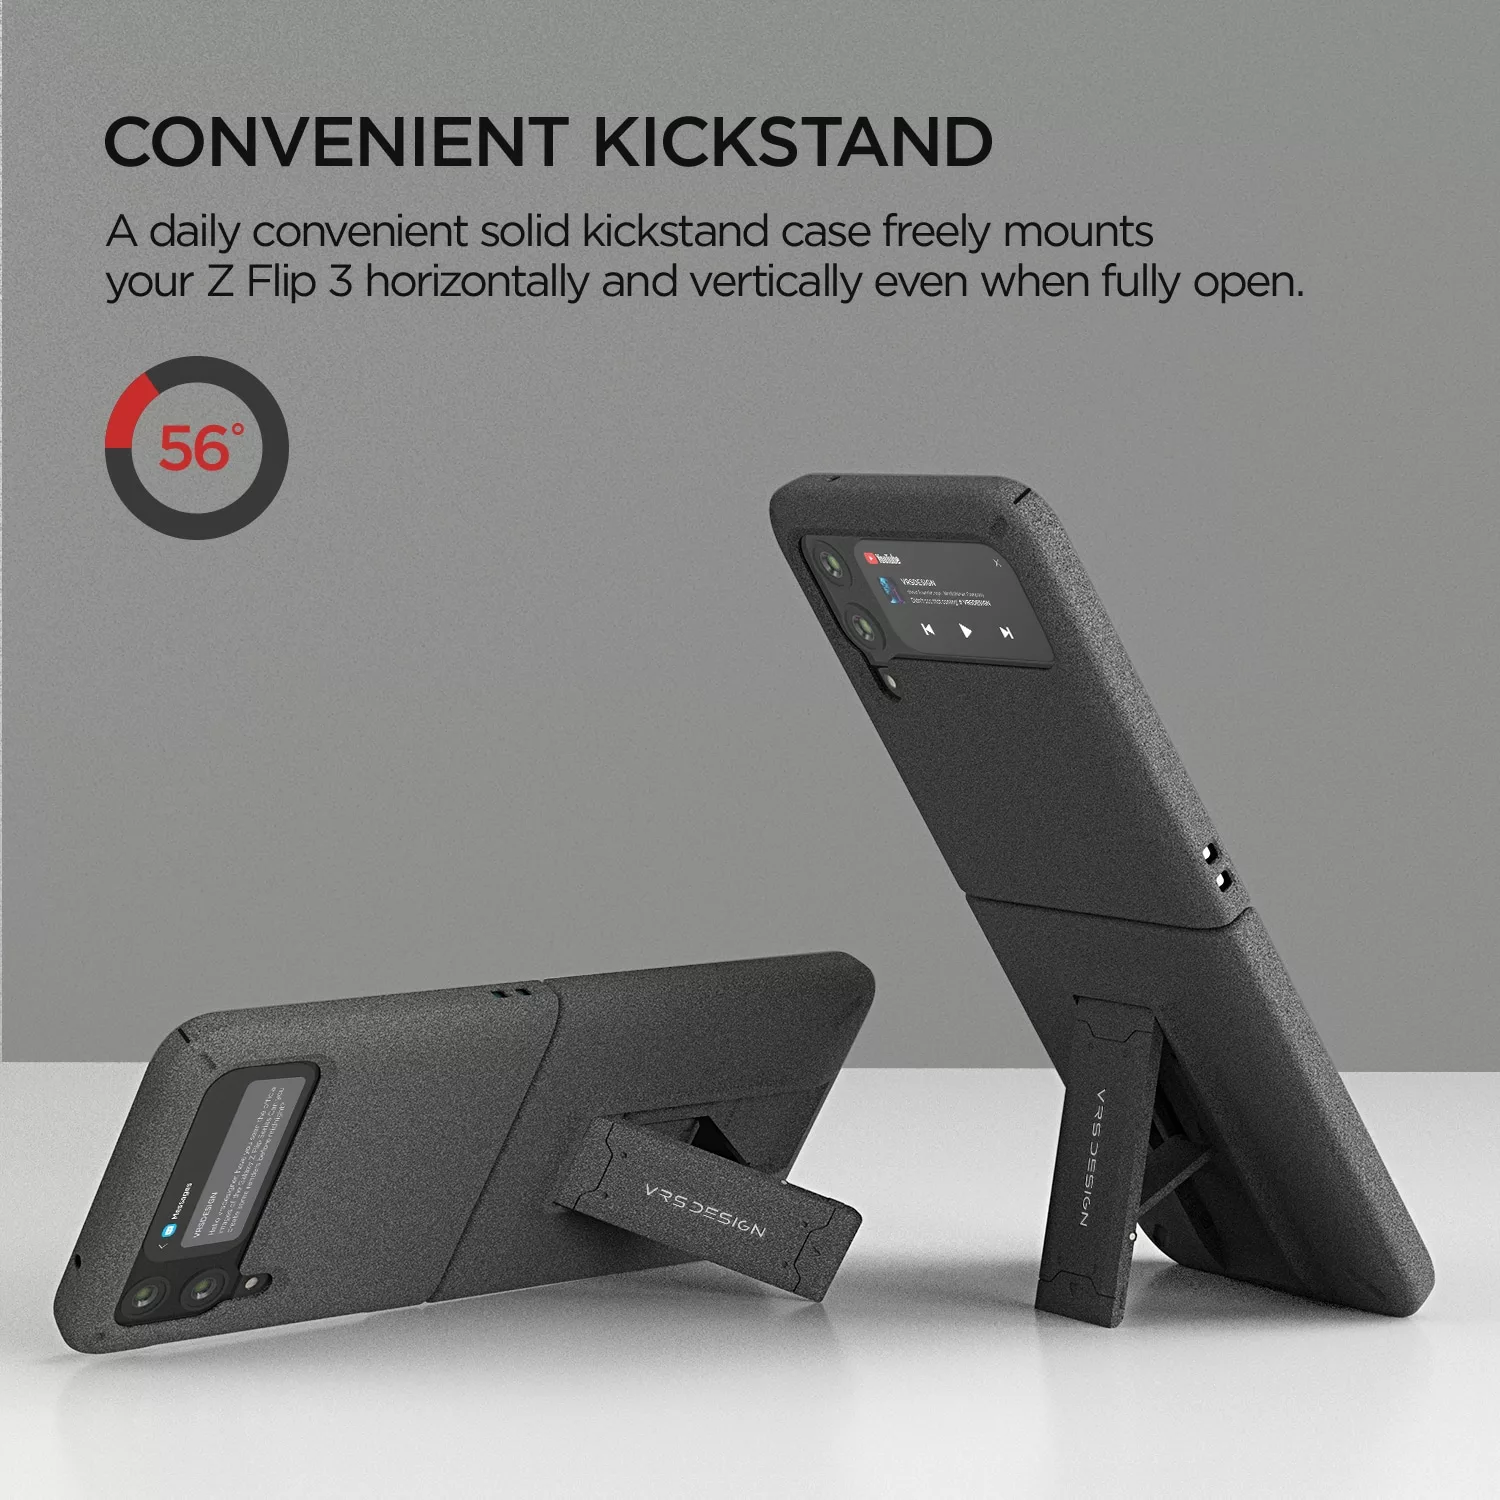 เคสกันกระแทก VRS รุ่น Quick Stand Modern - Galaxy Z Flip 3 - Sand Stone